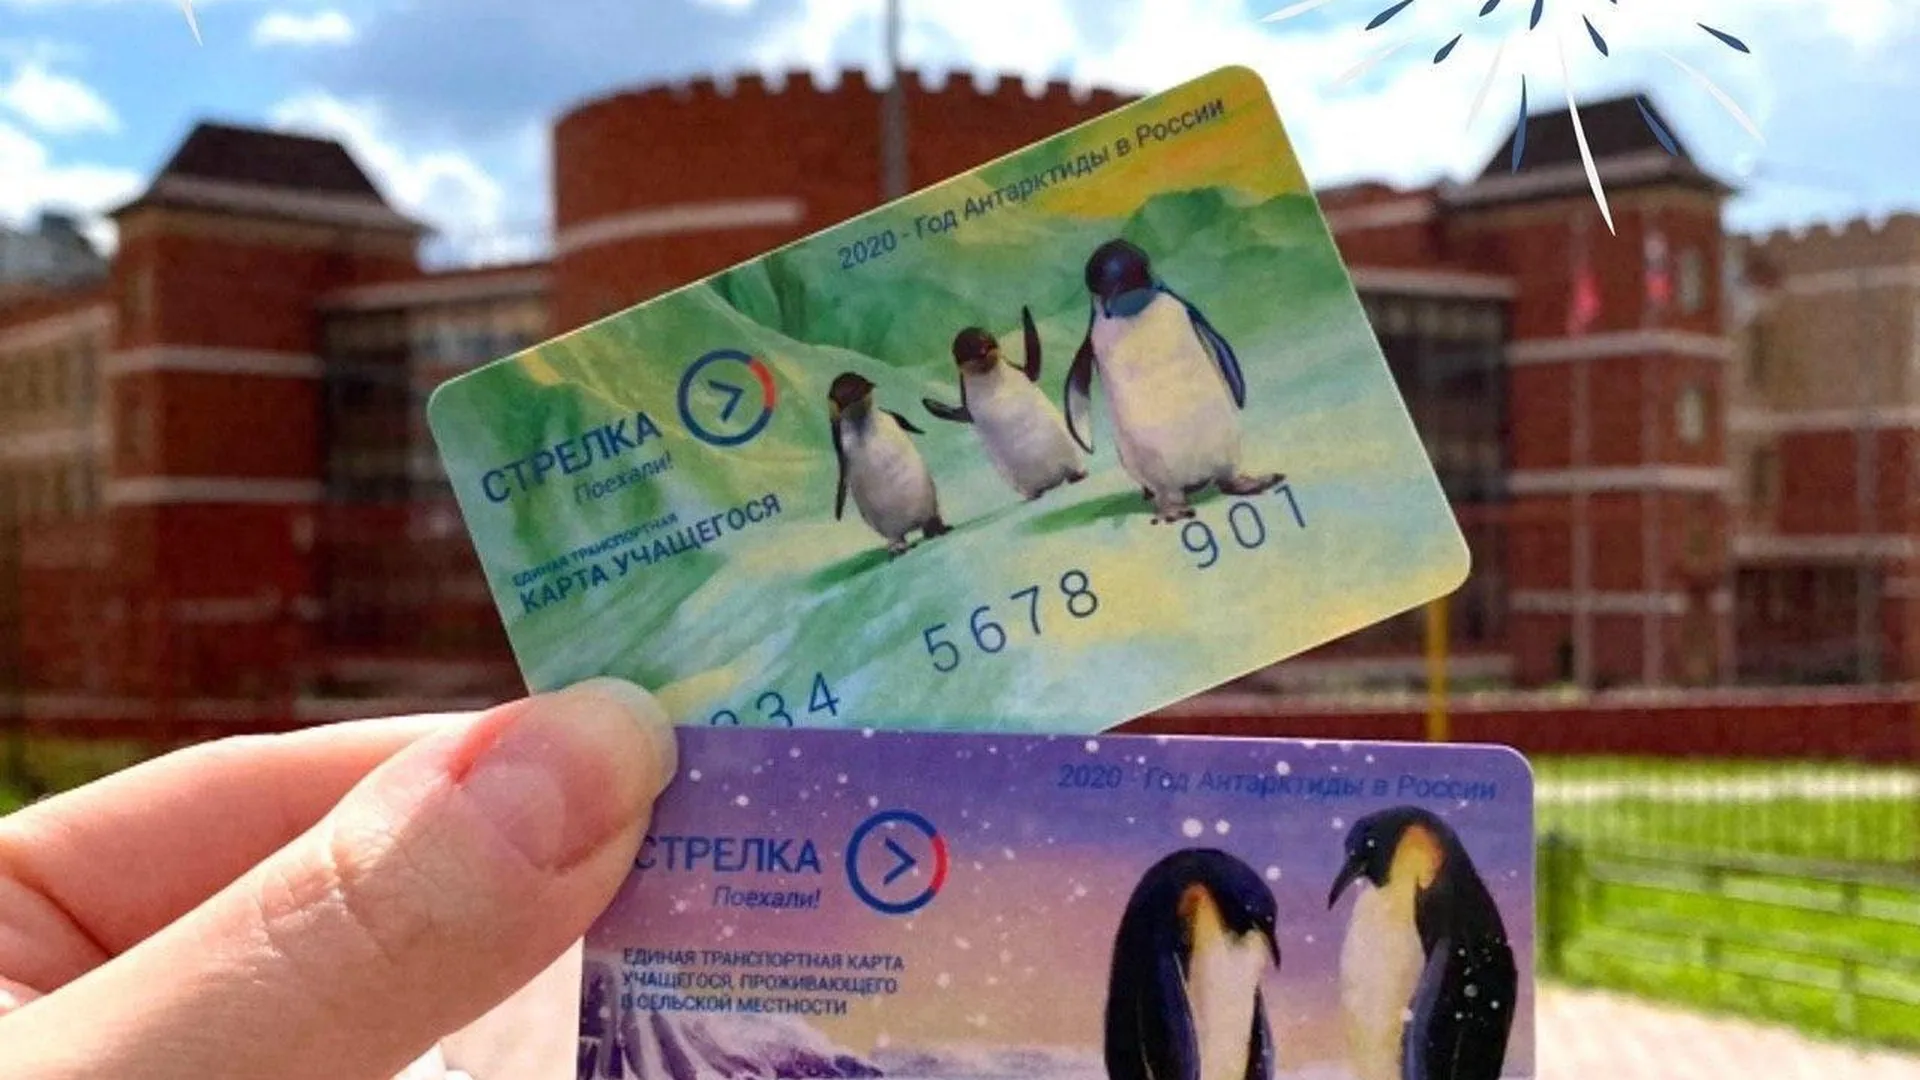 Антарктида в кармане. Серию карт «Стрелка» с пингвинами выпустят в Подмосковье к 200-летию открытия континента